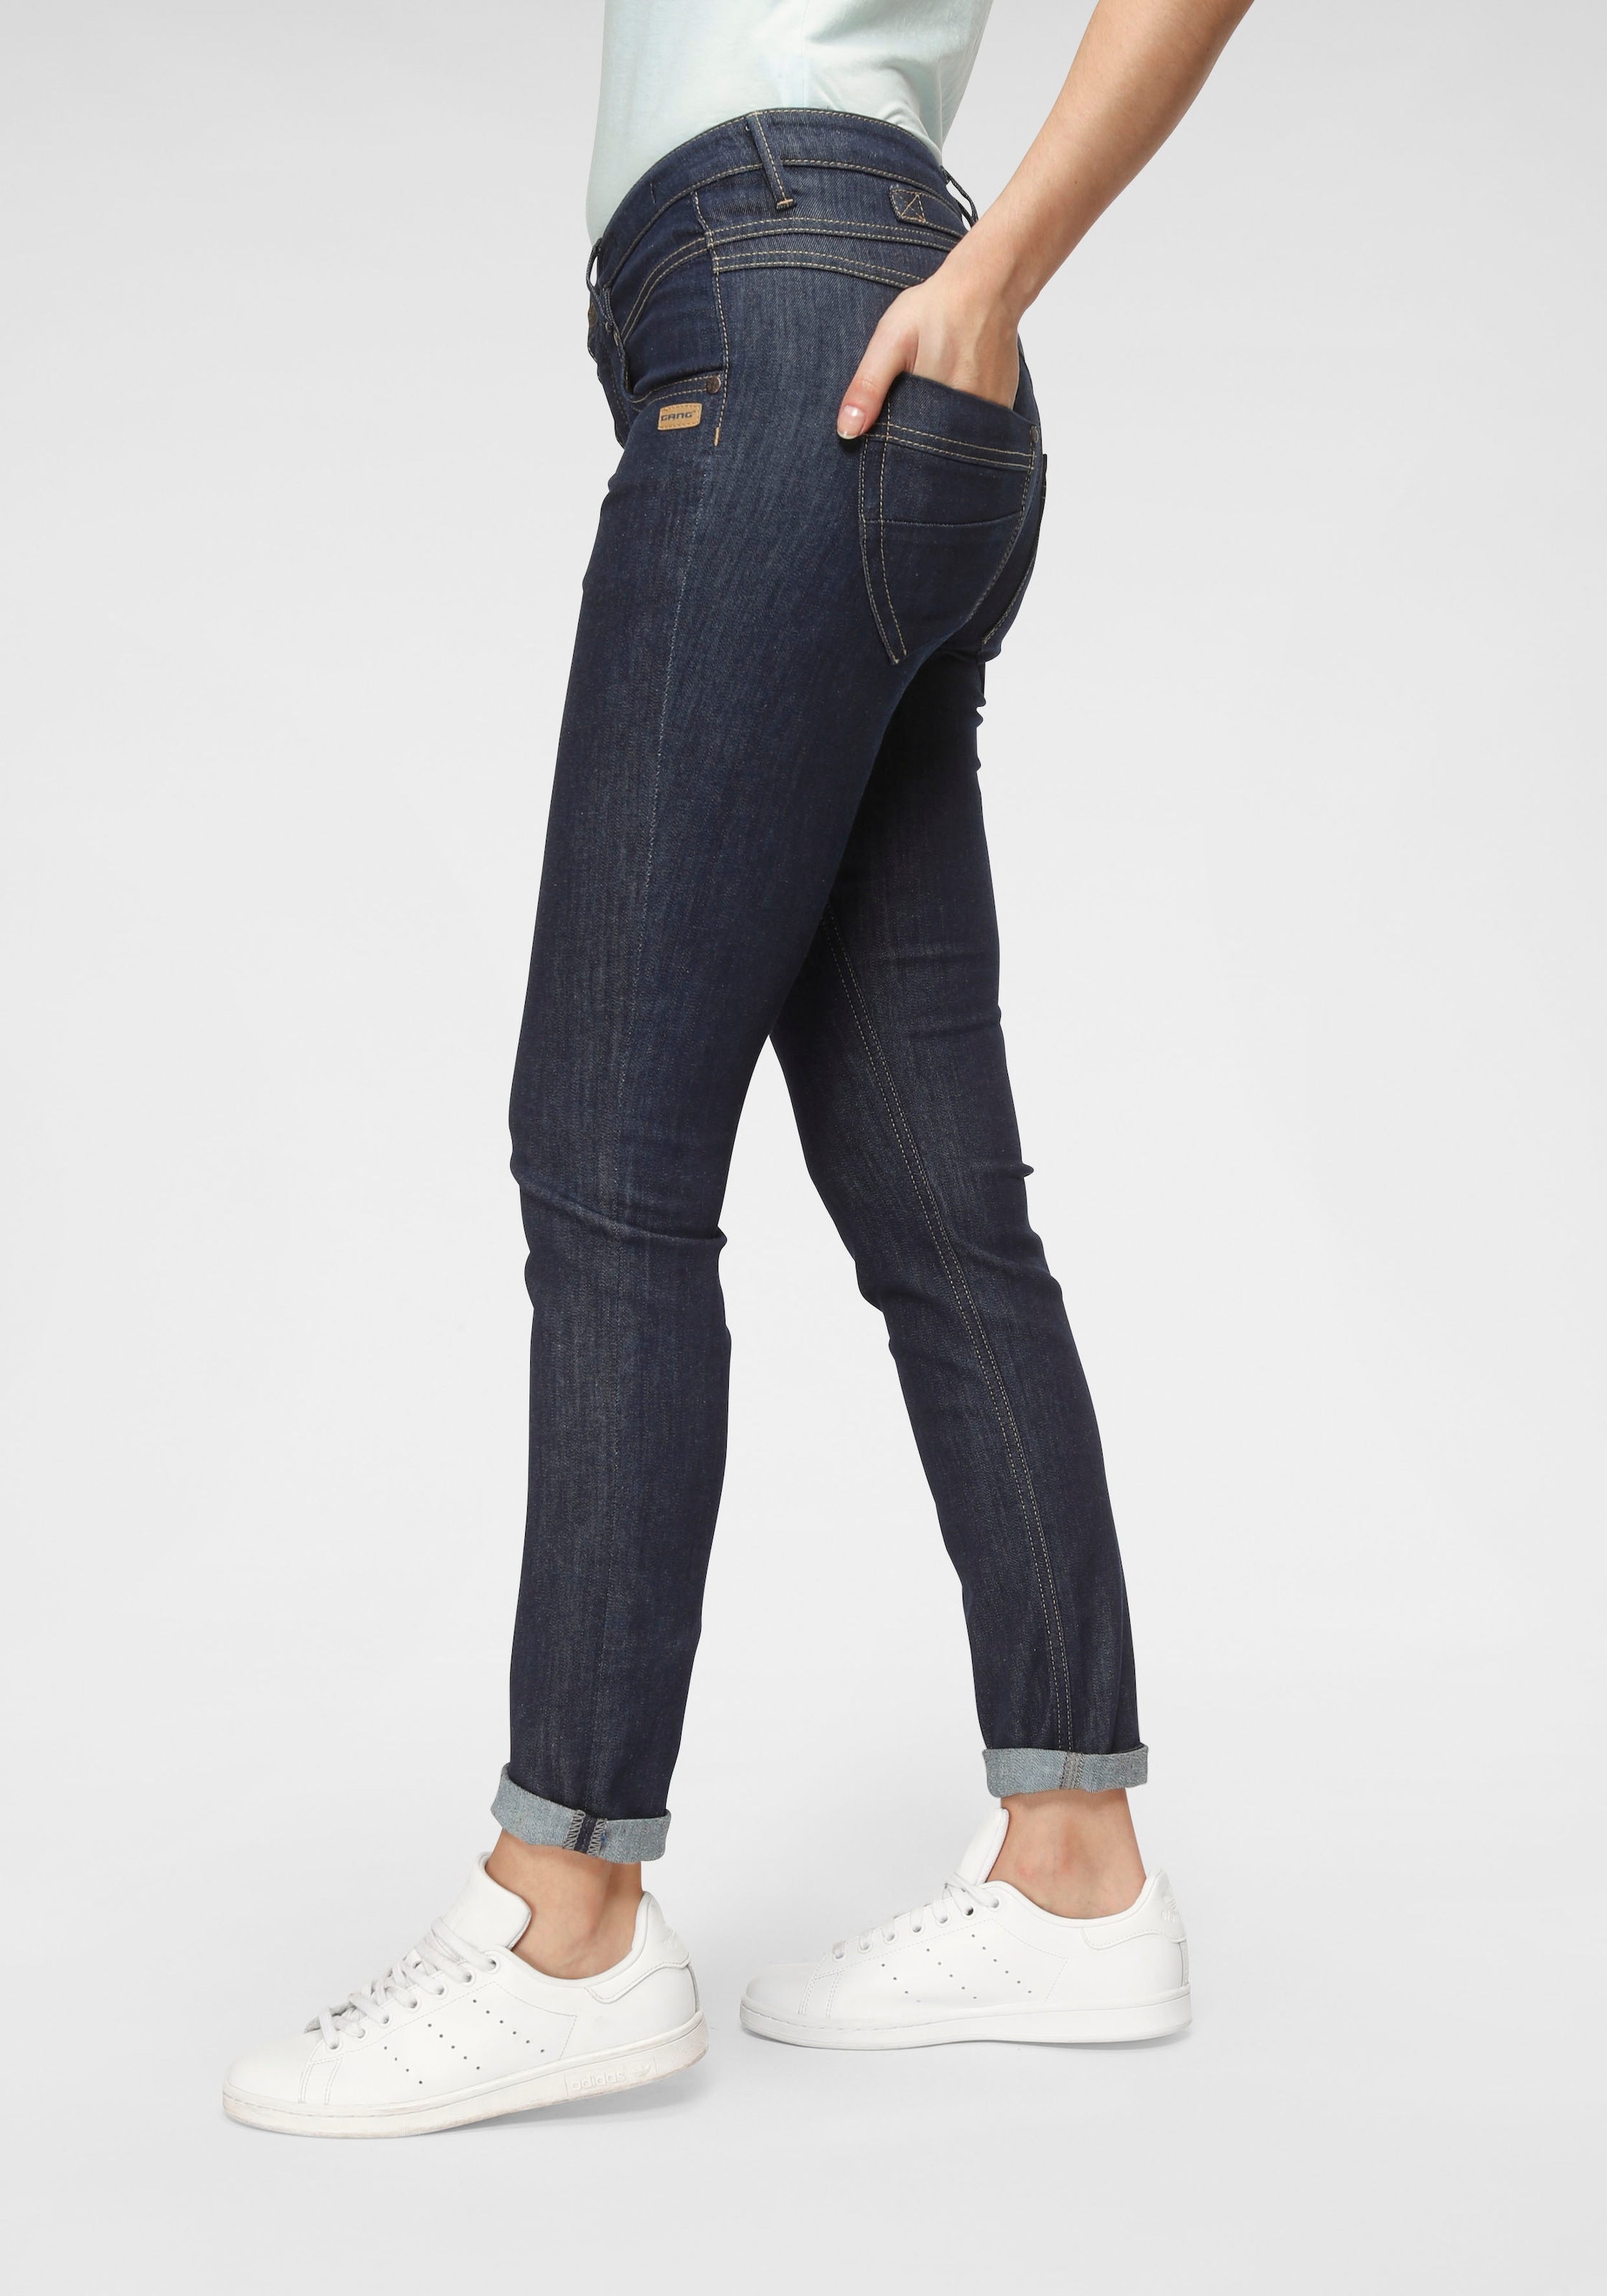 stylischer GANG OTTO Skinny-fit-Jeans Knopfleiste bei online offener mit »94Medina«, halb